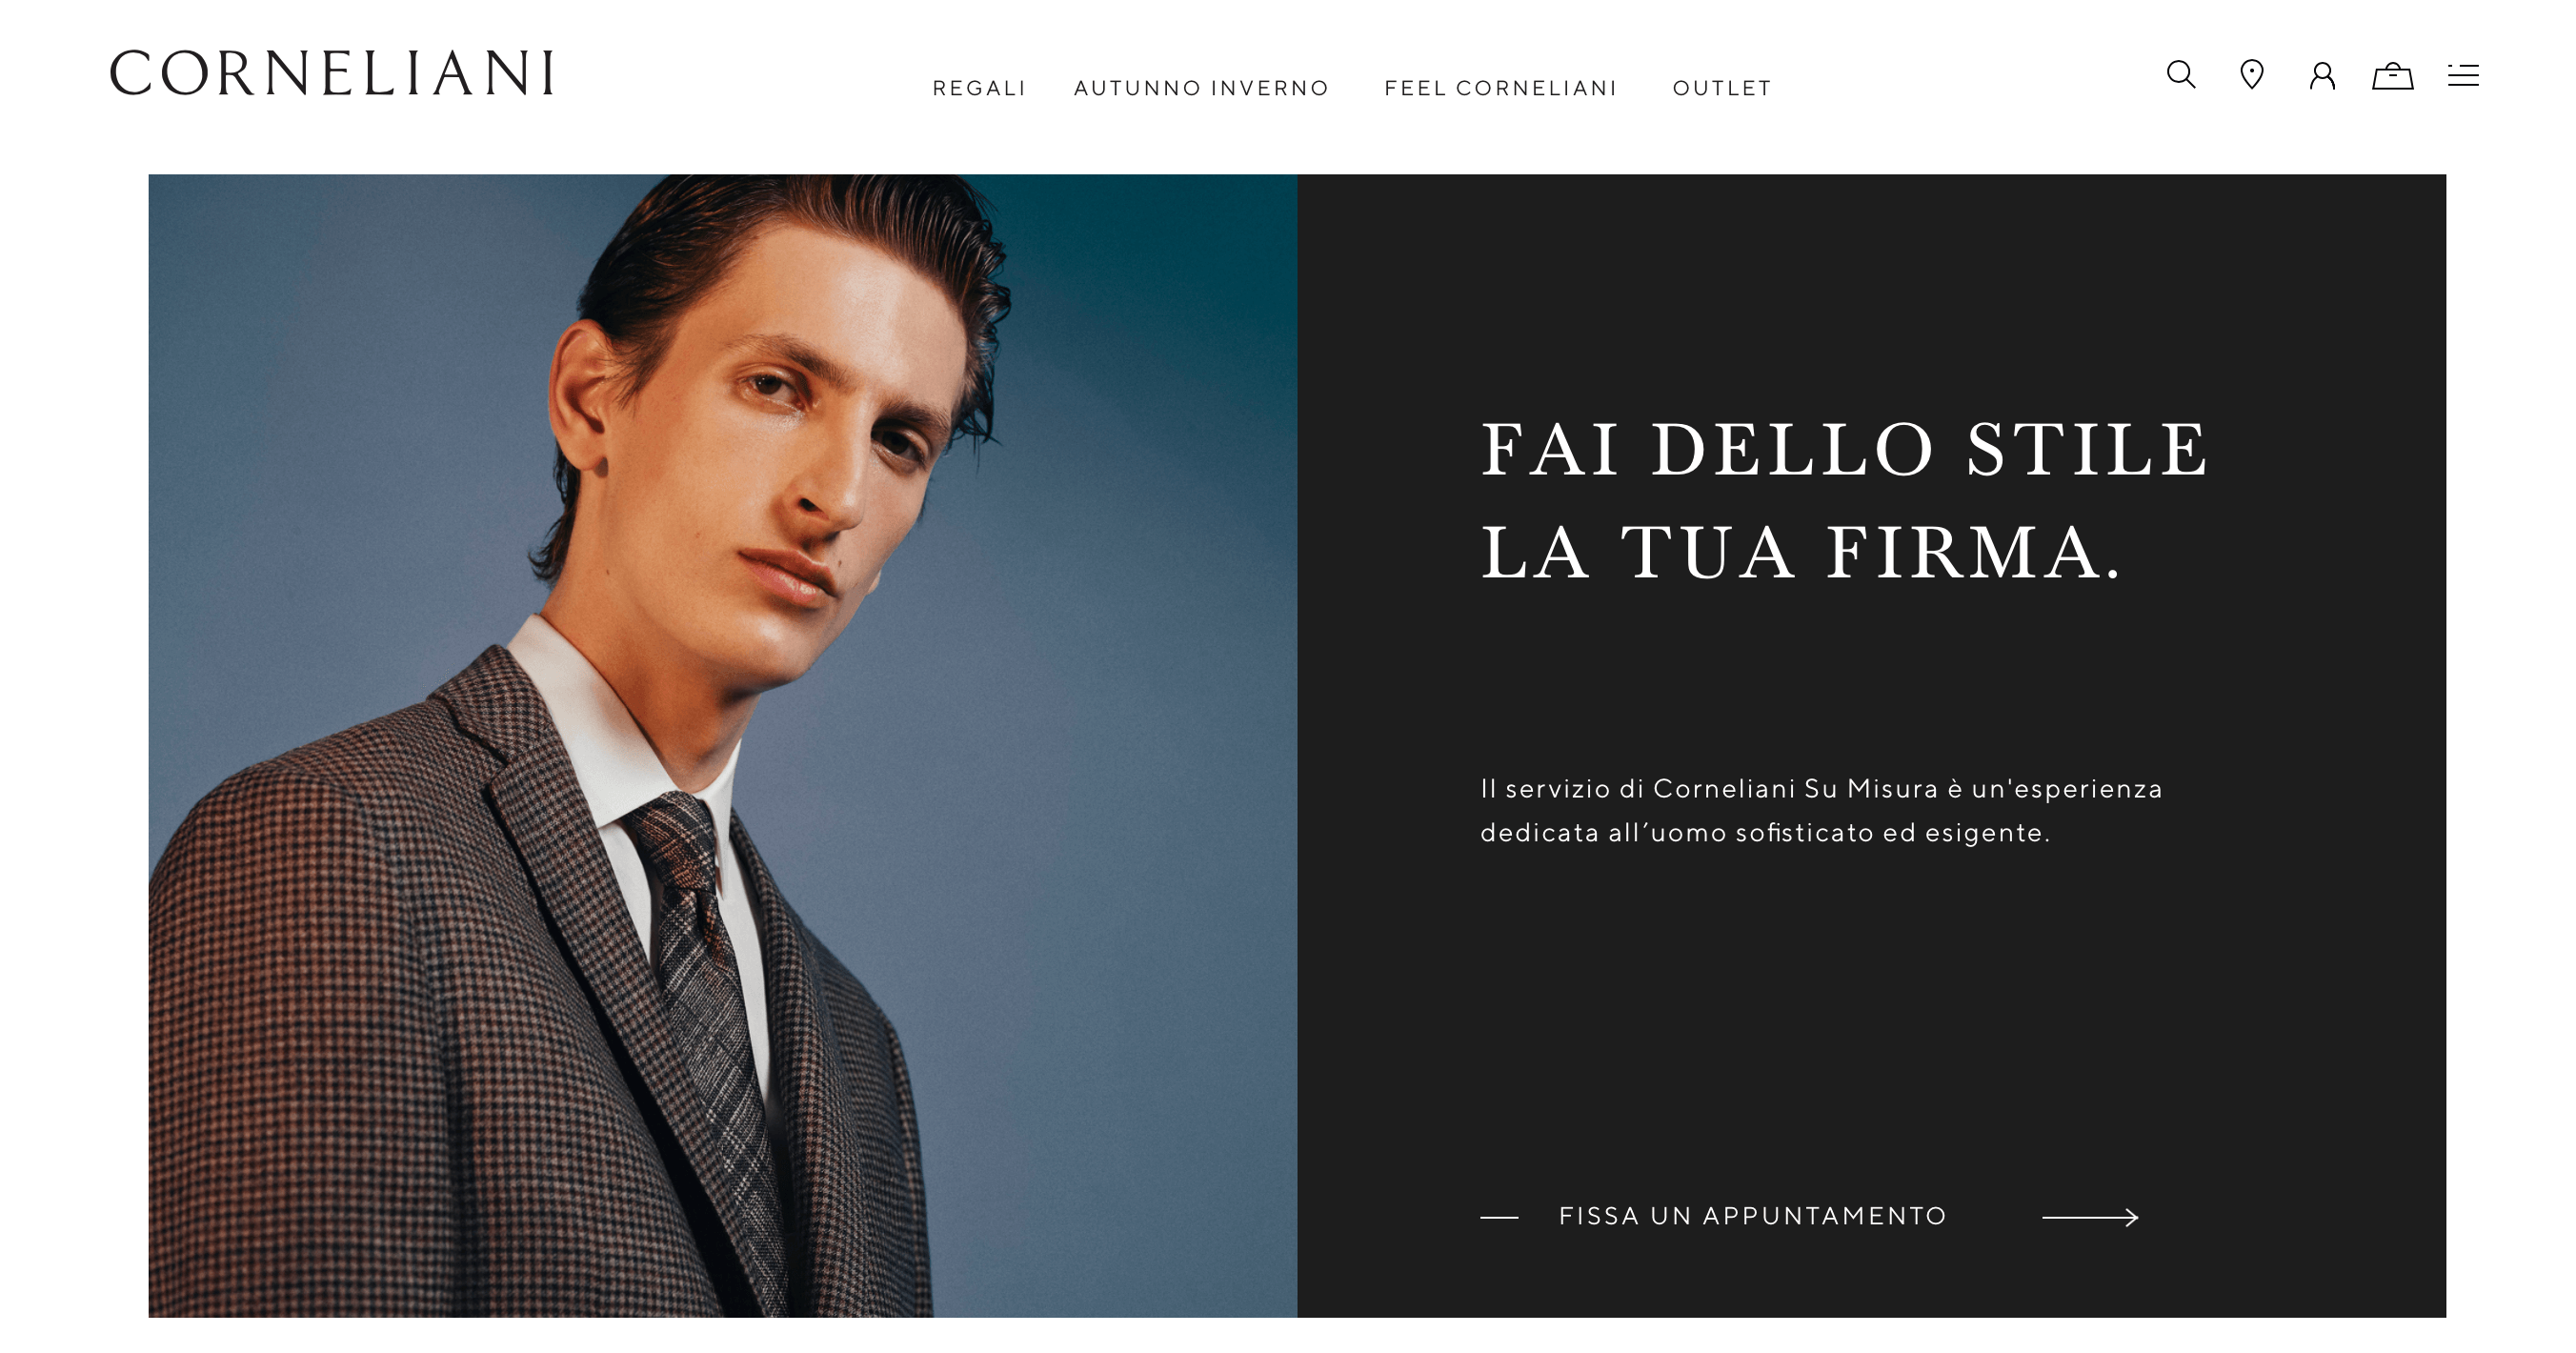 意大利高级男装品牌 Corneliani 绝处逢生，获意大利经济发展部和私人投资者1700万欧元投资